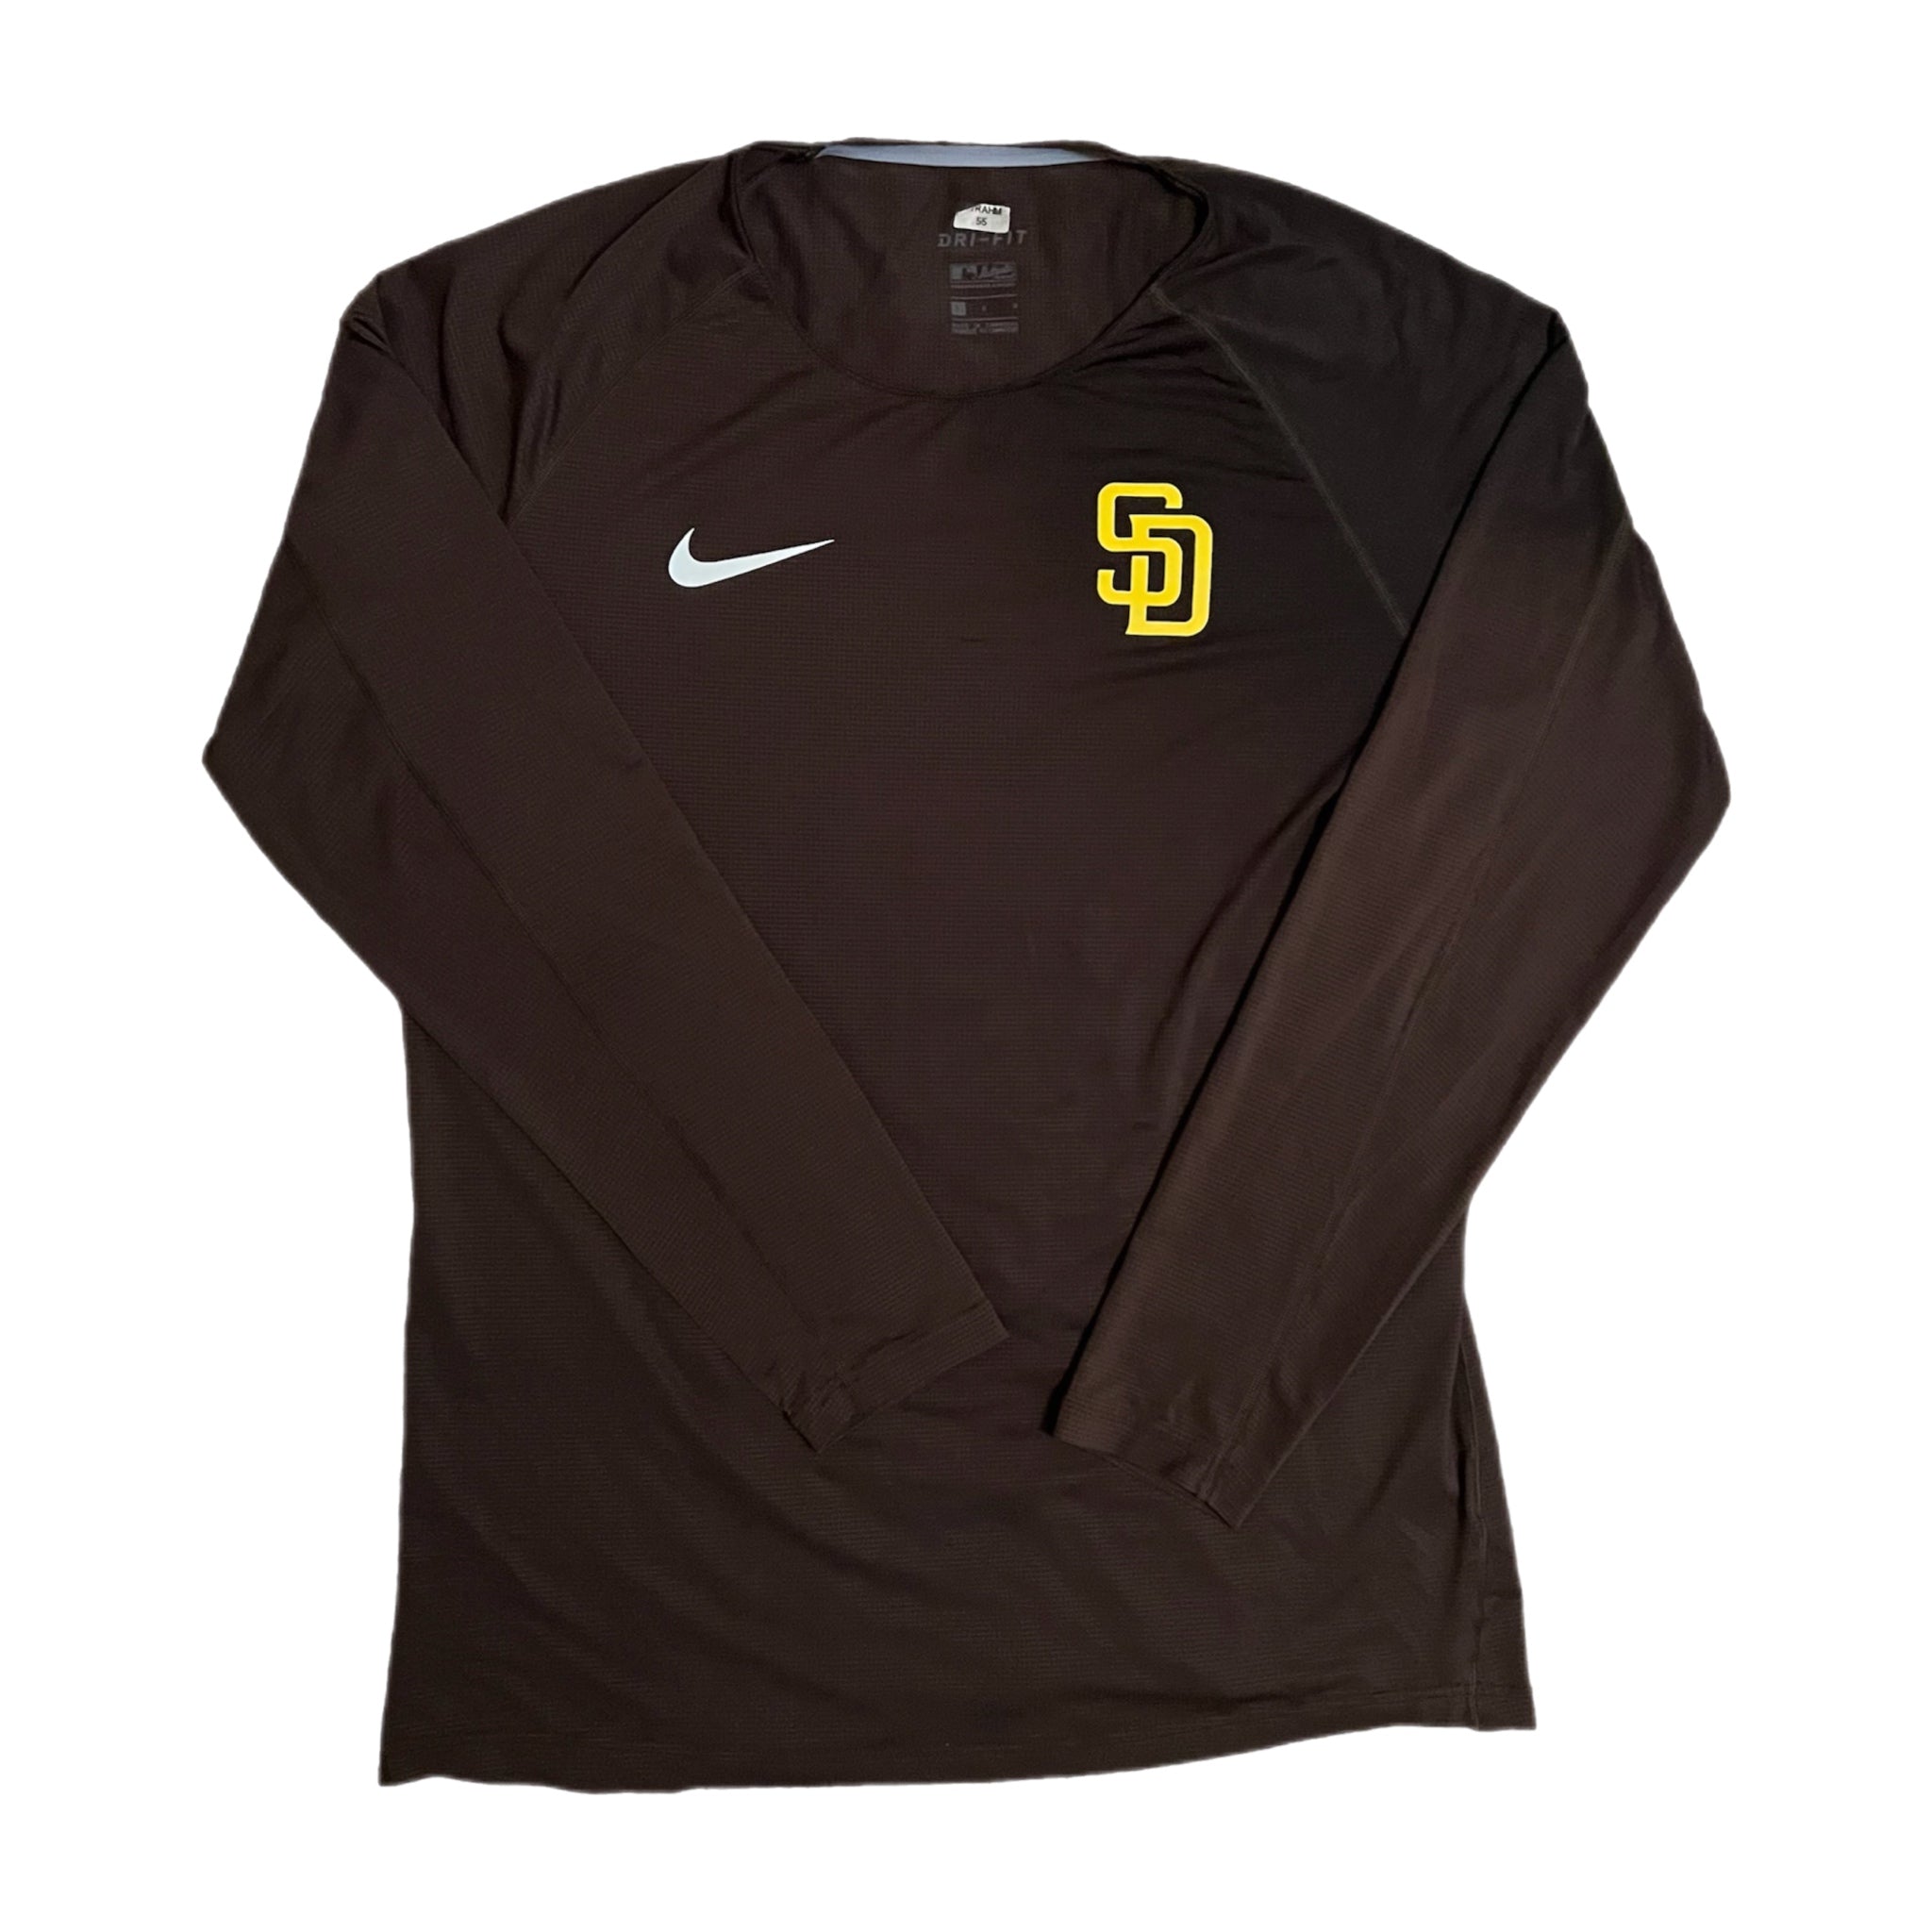 Matt Strahm San Diego Padres Nike Dri Fit Shirt - L